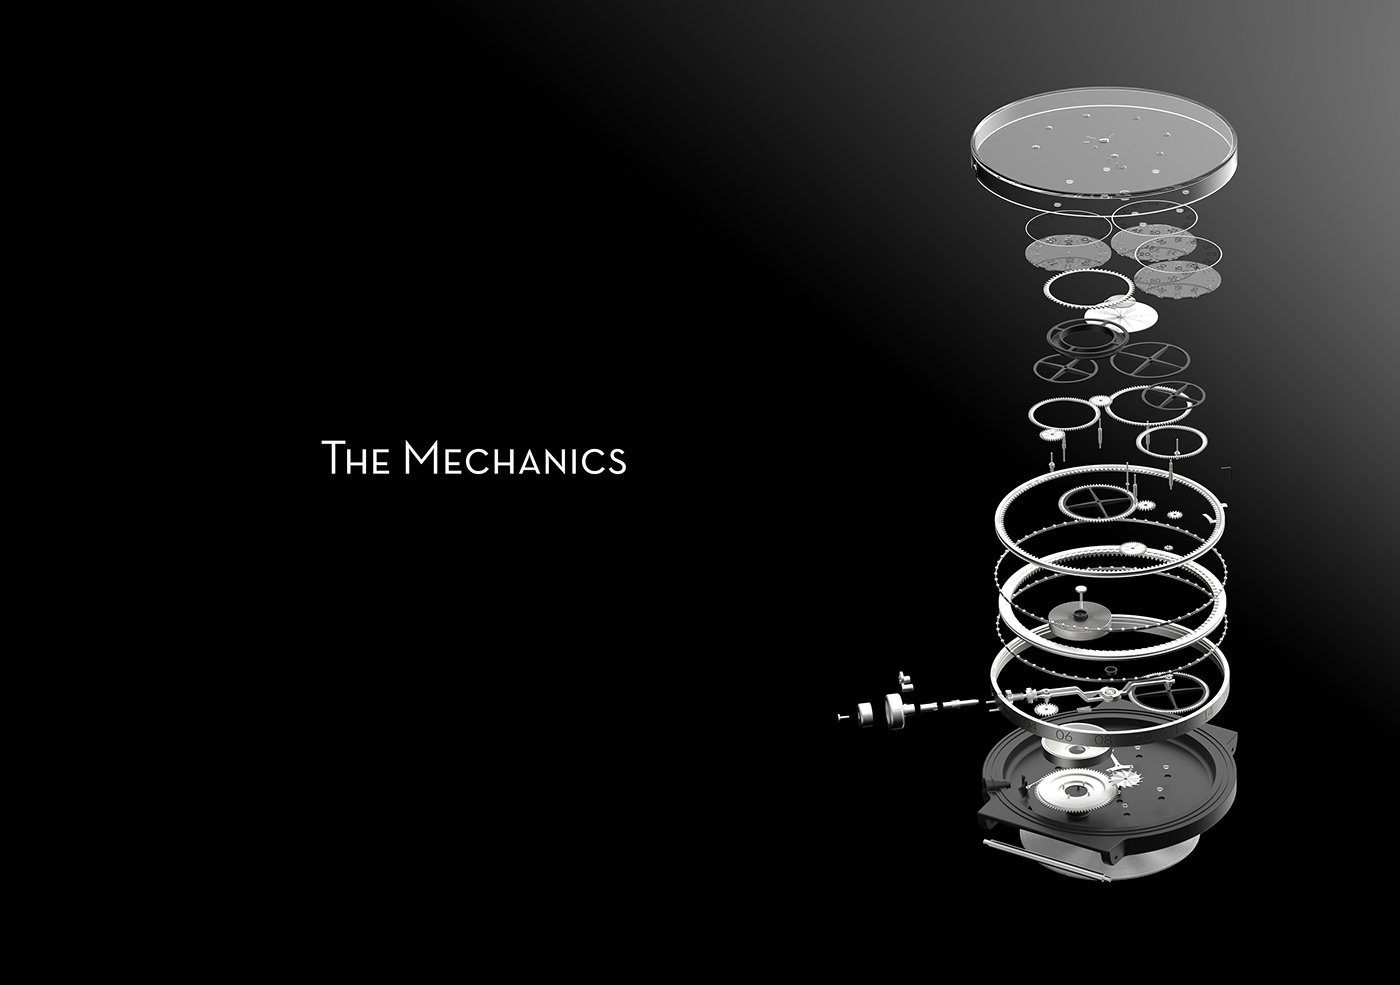 watch design engbar watch mechanics mechanical engineering mechanical watch